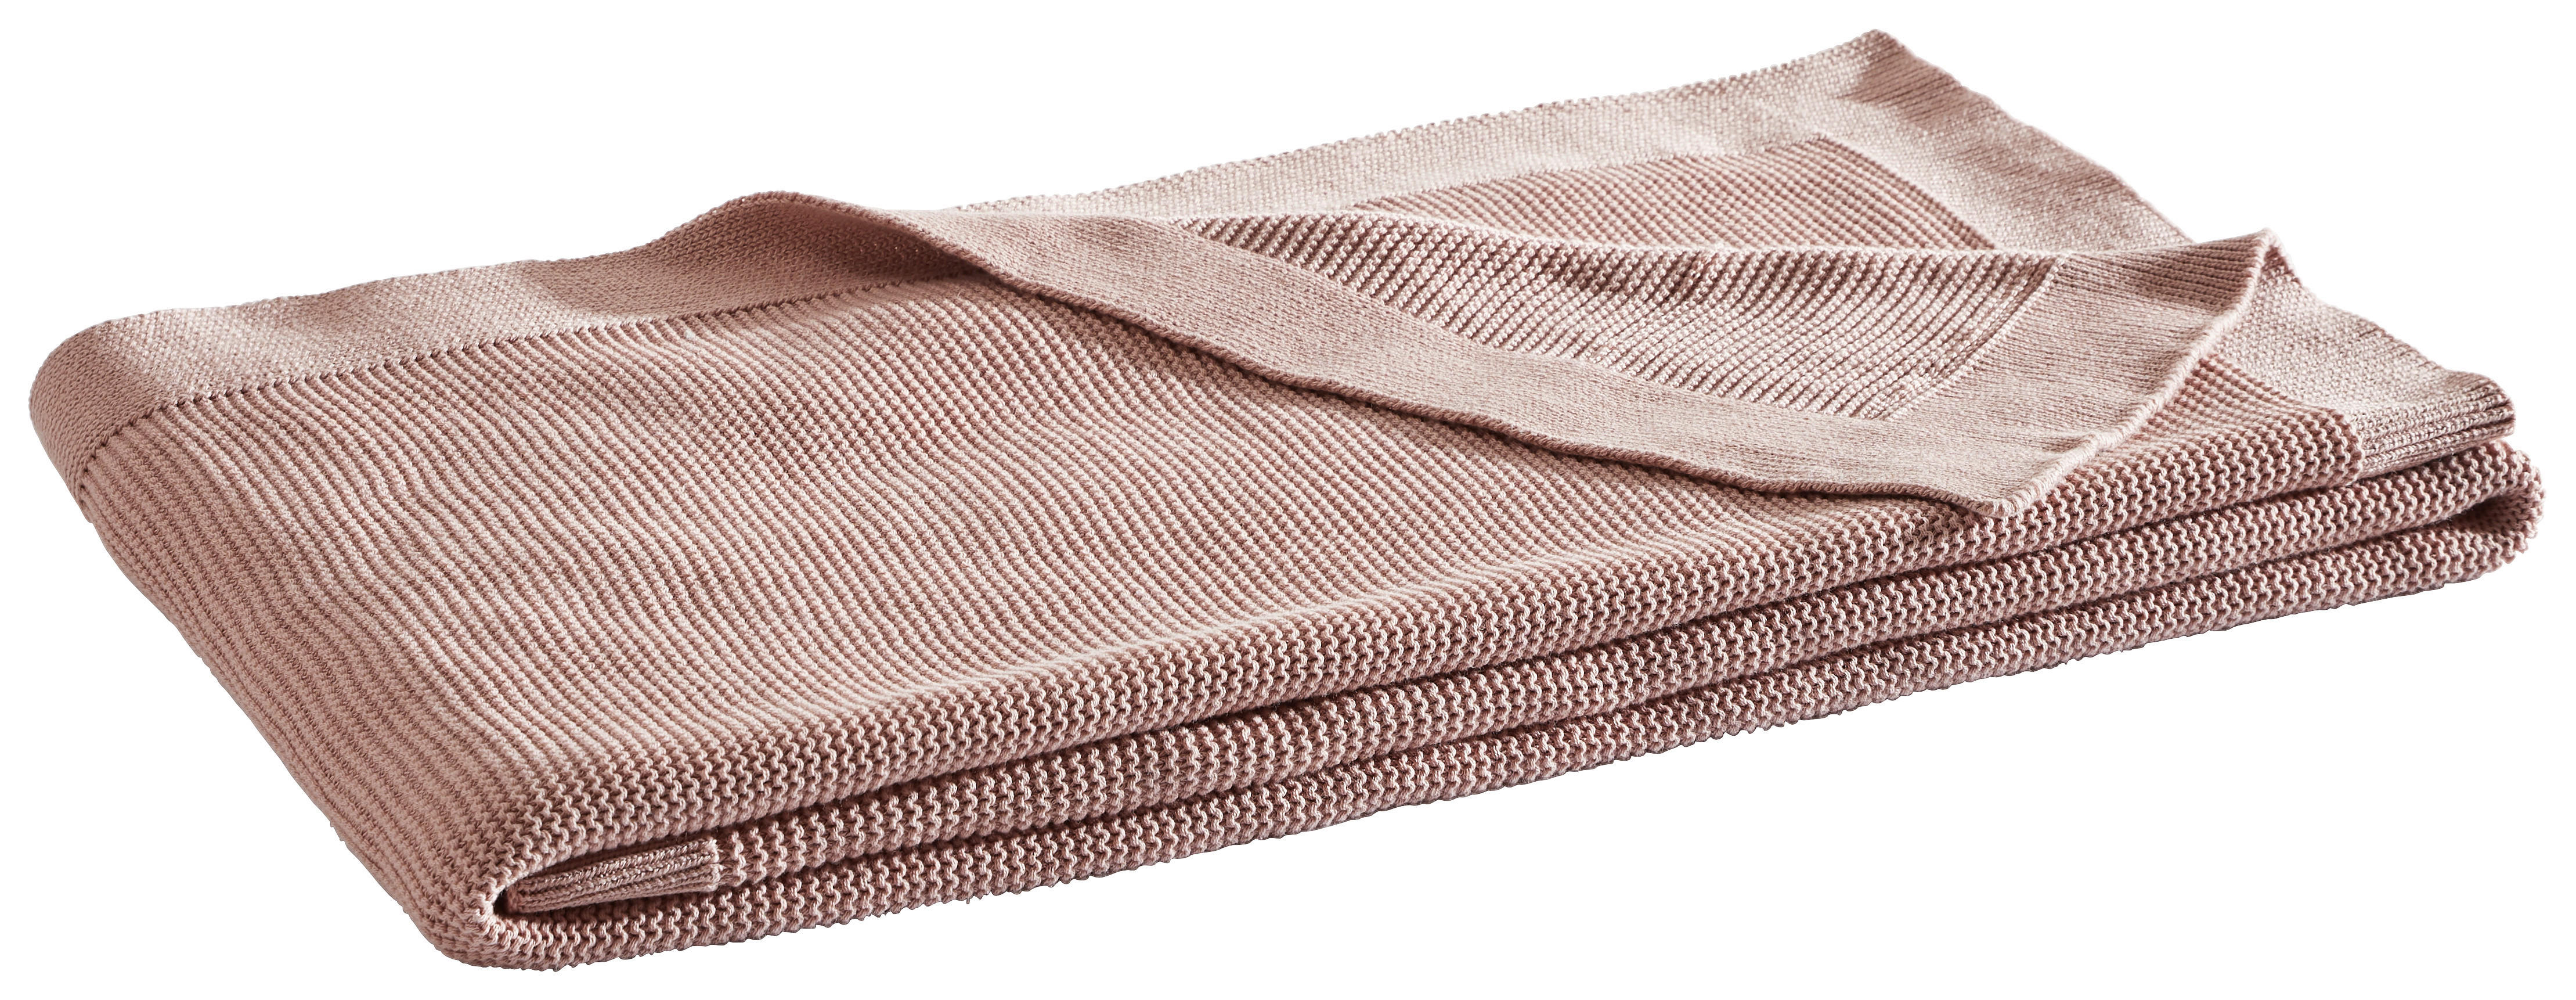 WOHNDECKE BEJA 150/200 cm  - Rosa, Basics, Textil (150/200cm) - Dieter Knoll